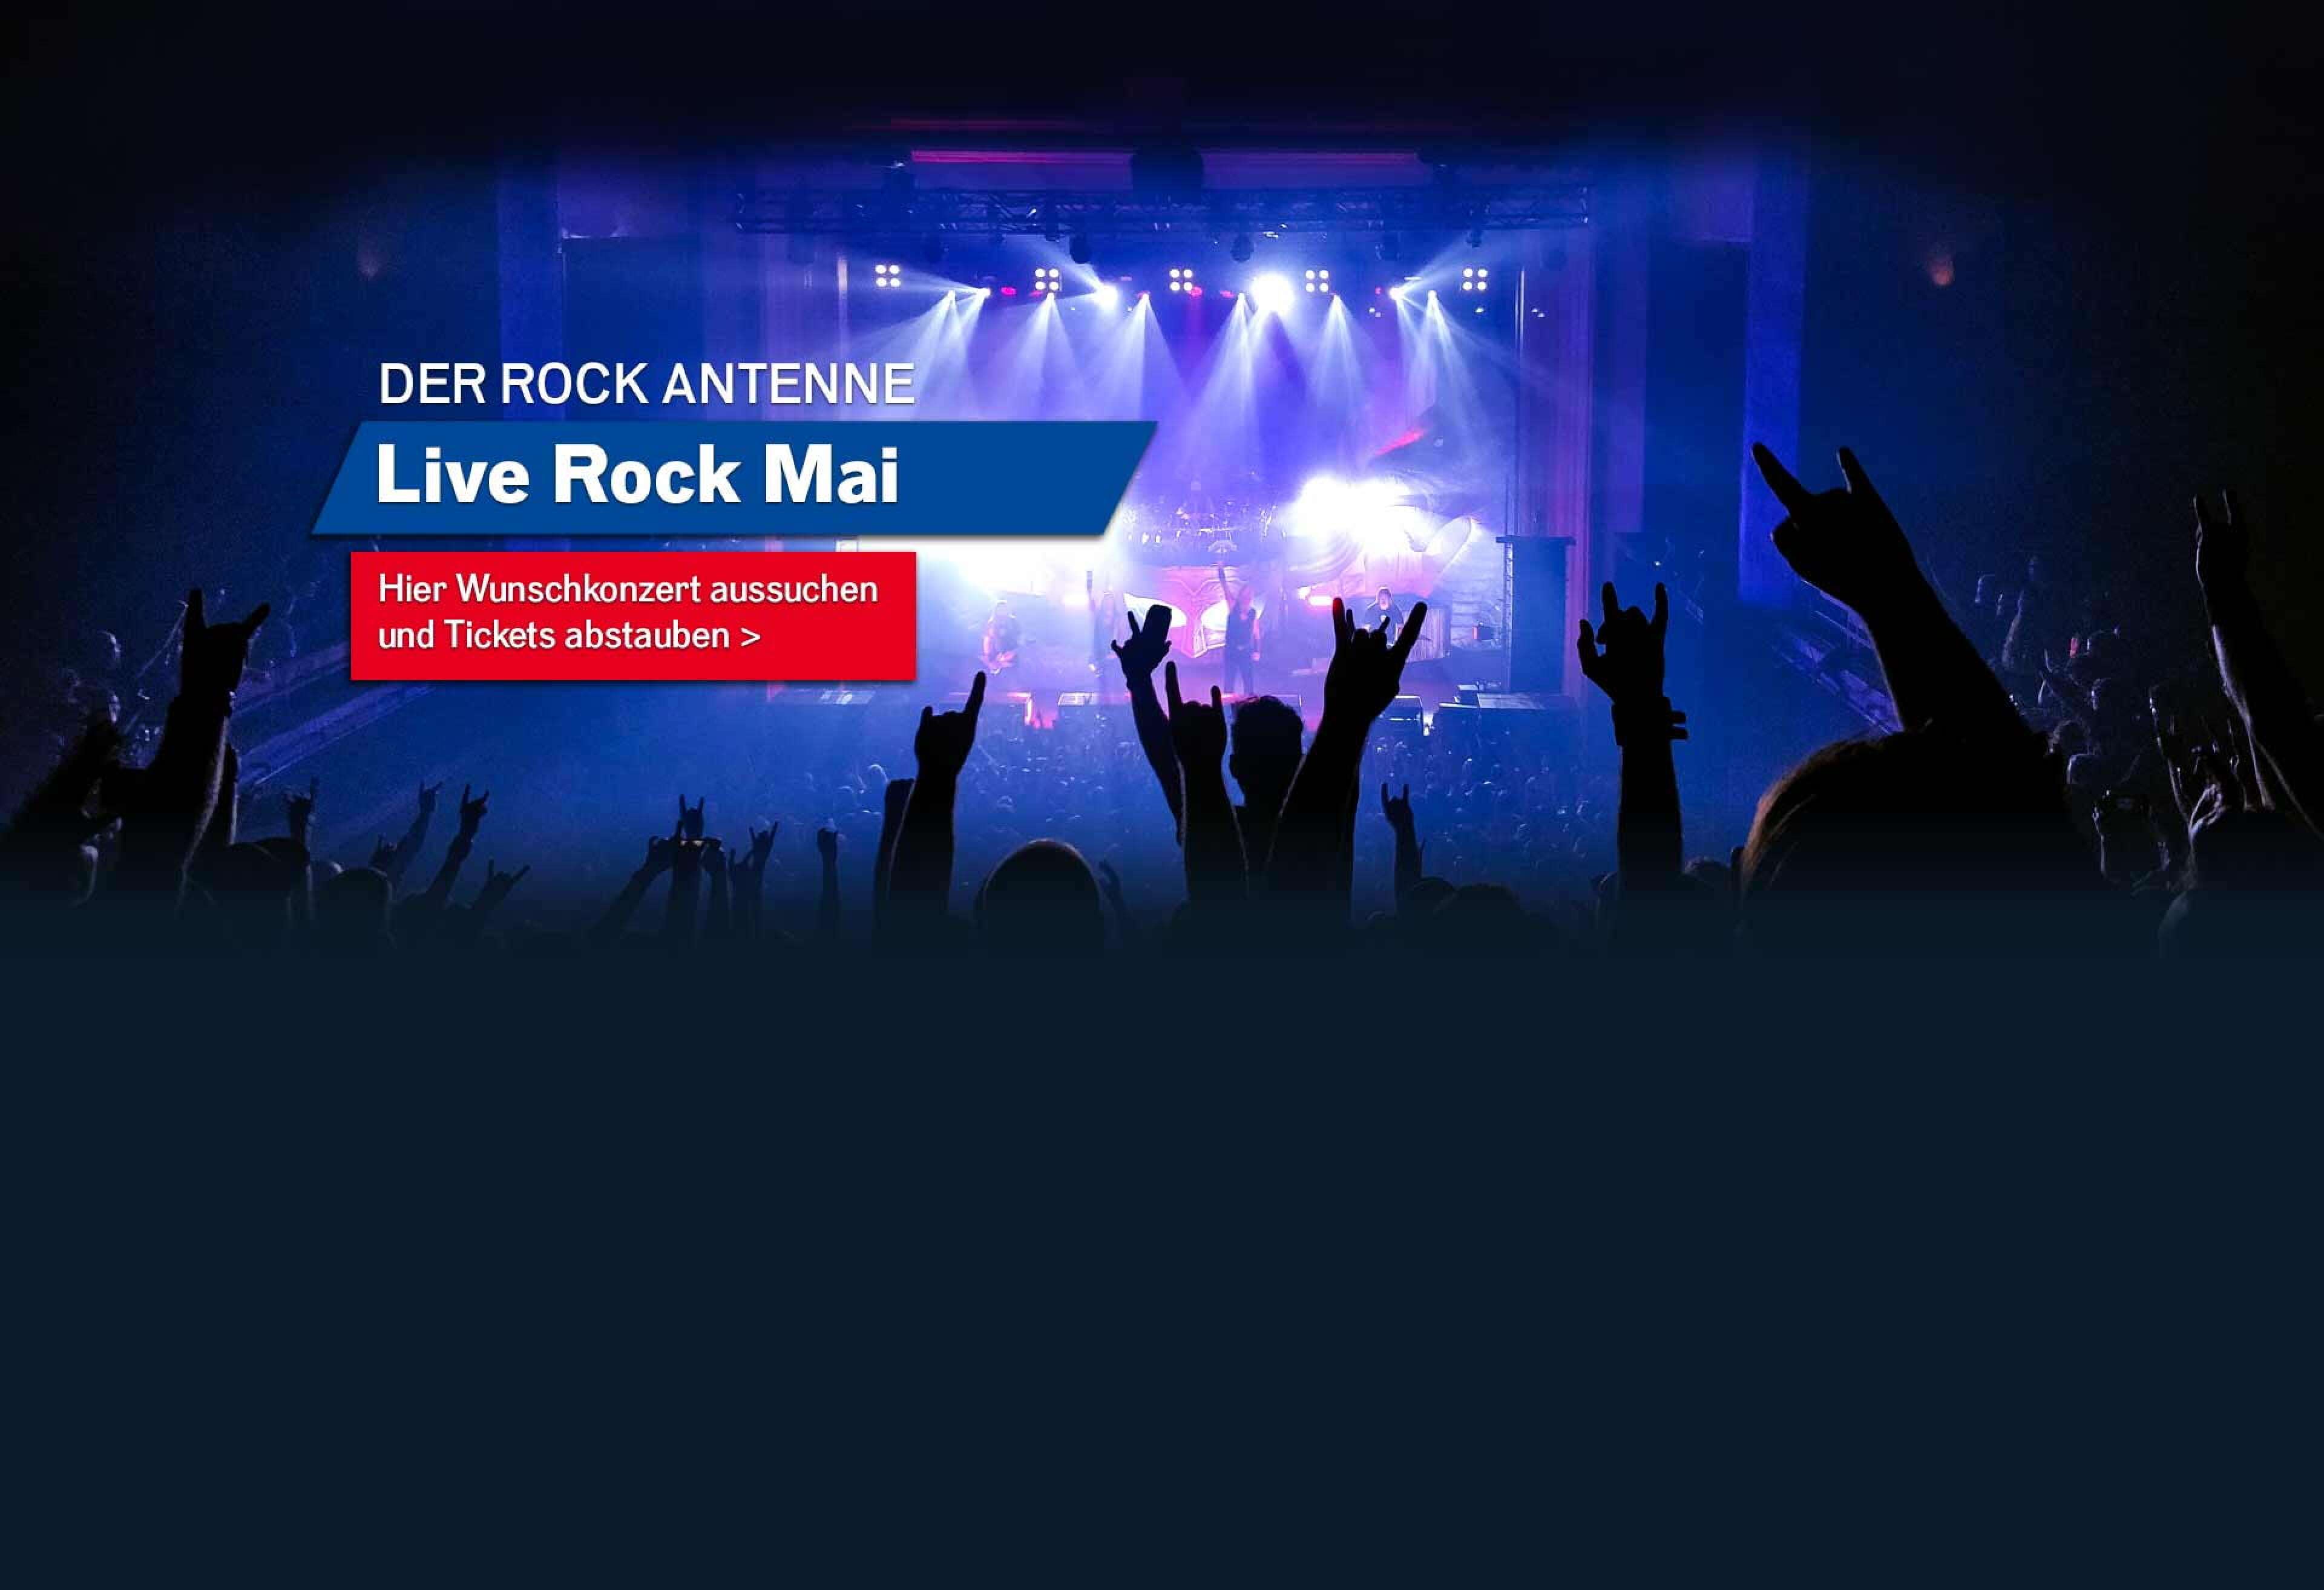 Bild eines Konzert-Publikums mit Blick auf die Bühne mit Aufschrift ROCK ANTENNE Live Rock Mai - hier Wunschkonzert aussuchen und Tickets abstauben!